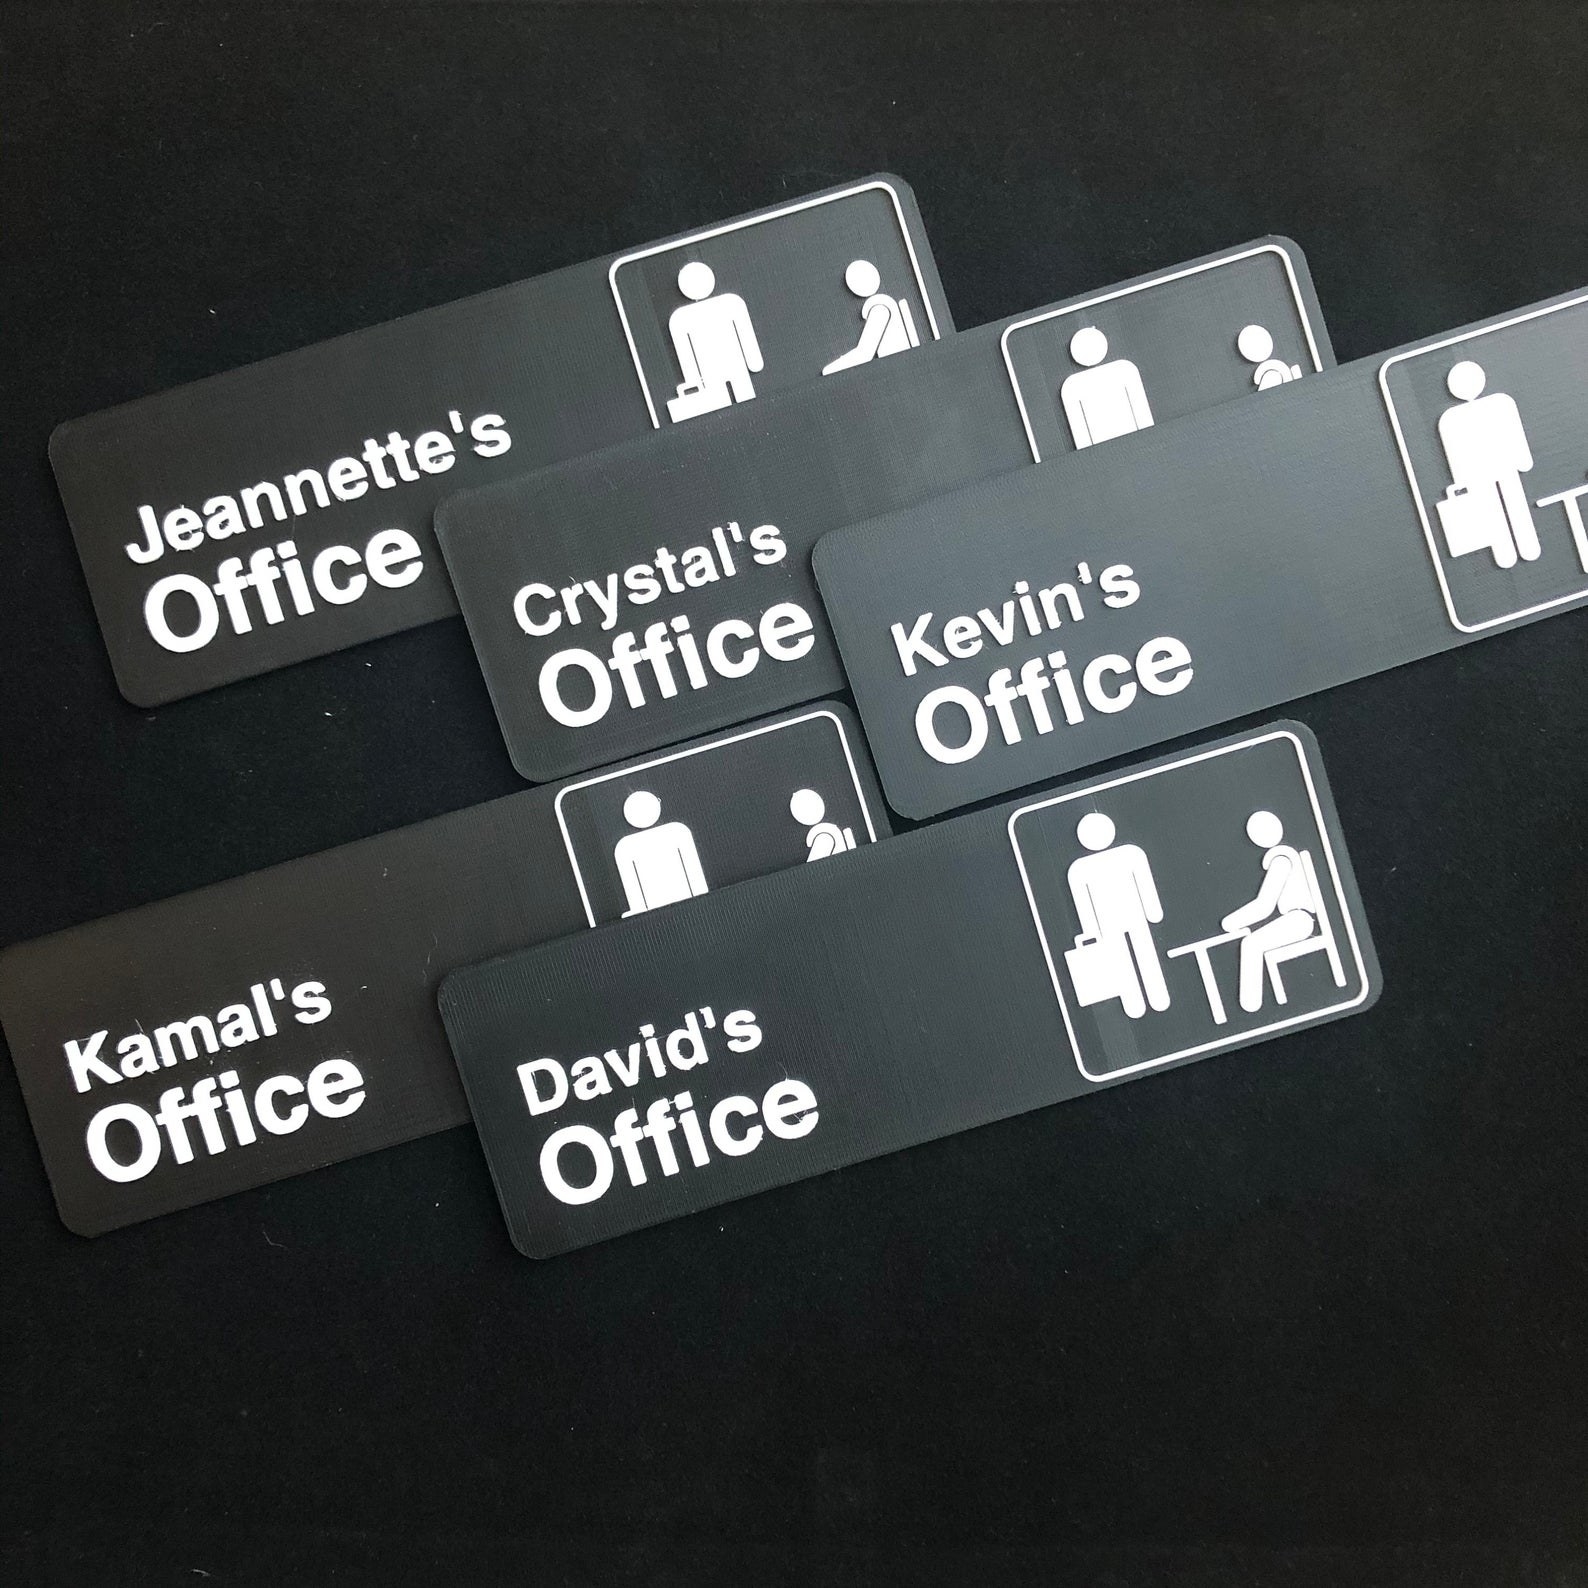 办公室的门与人民# x27迹象;年代上的名字像kamal # x27;办公室和水晶# x27;年代办公室”class=